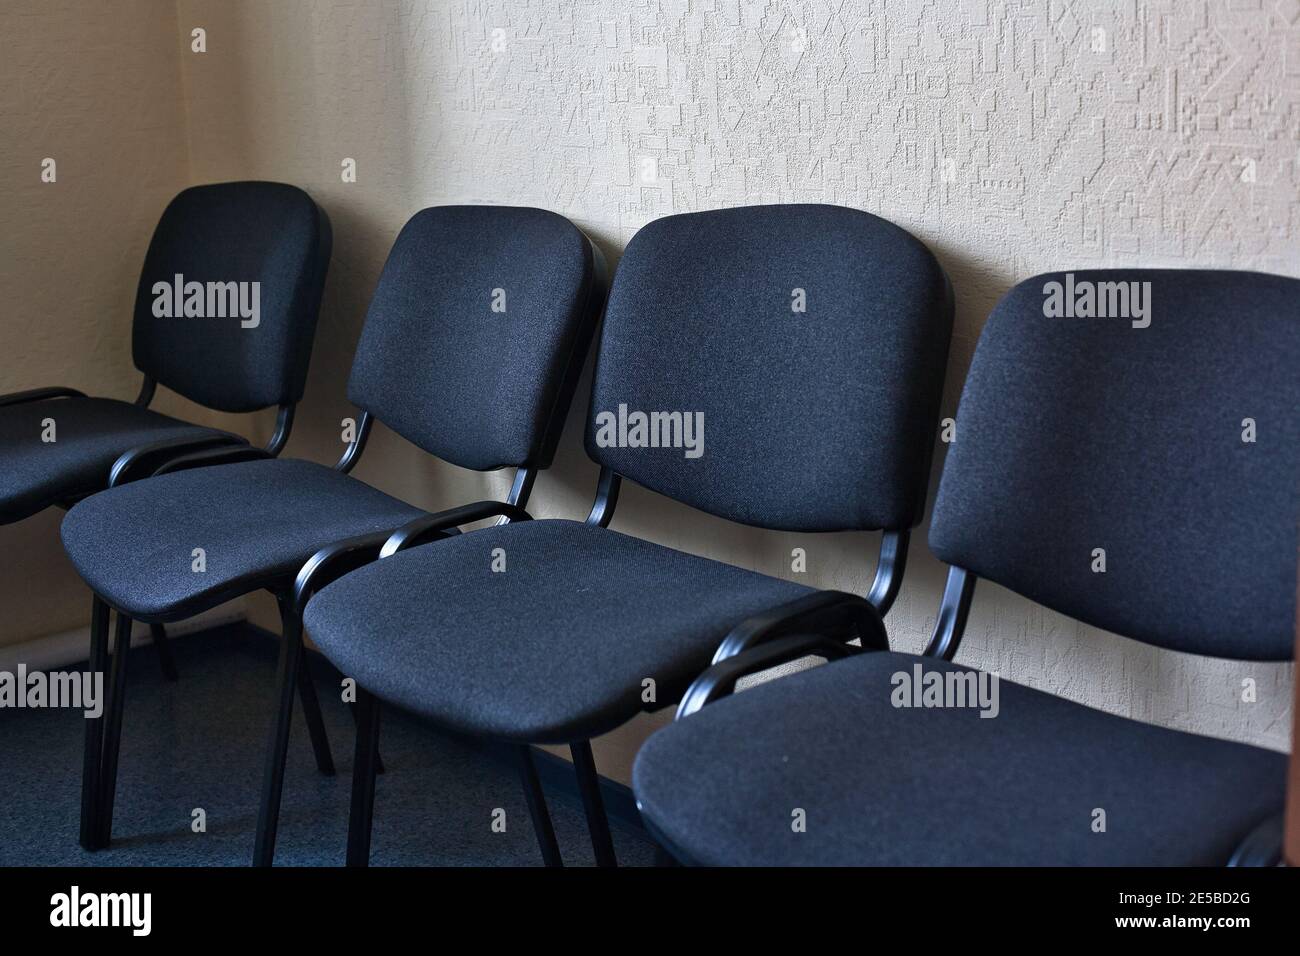 Les chaises de bureau en tissu noir sont alignées le long du mur. Banque D'Images